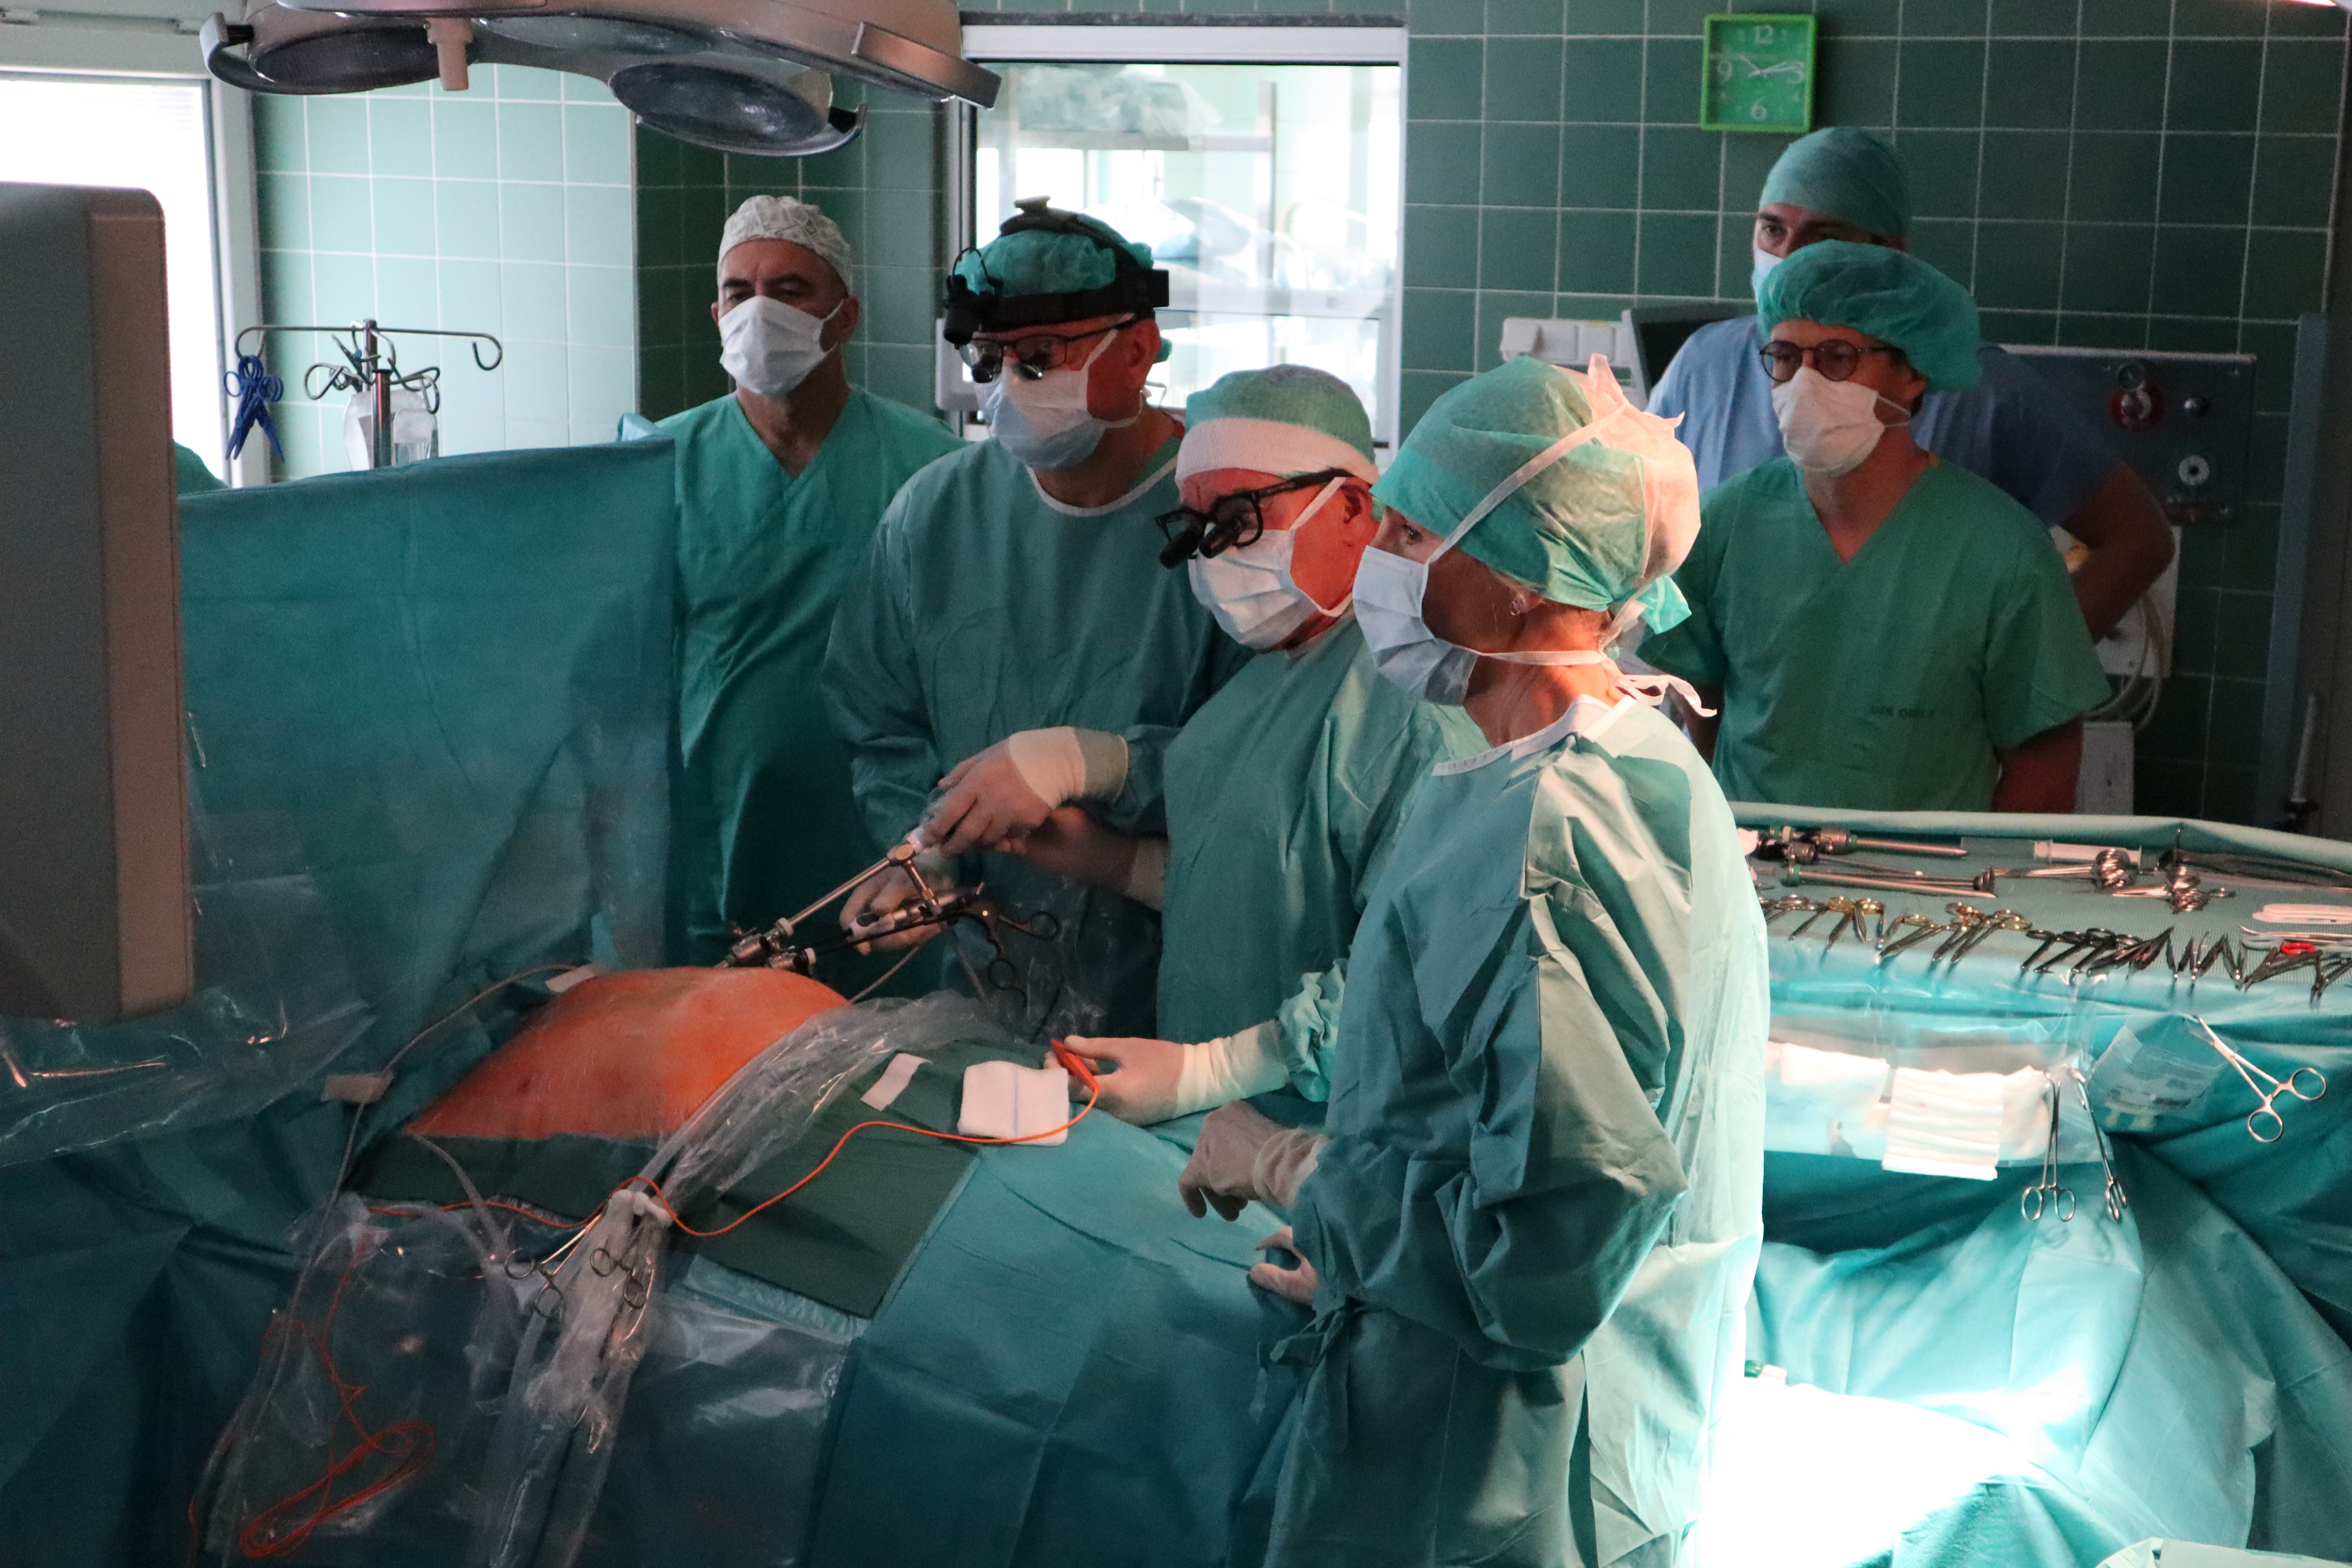 Przeniesienie do informacji o tytule: Endoskopowy tor wizyjny – nowość na bloku operacyjnym USK w Opolu